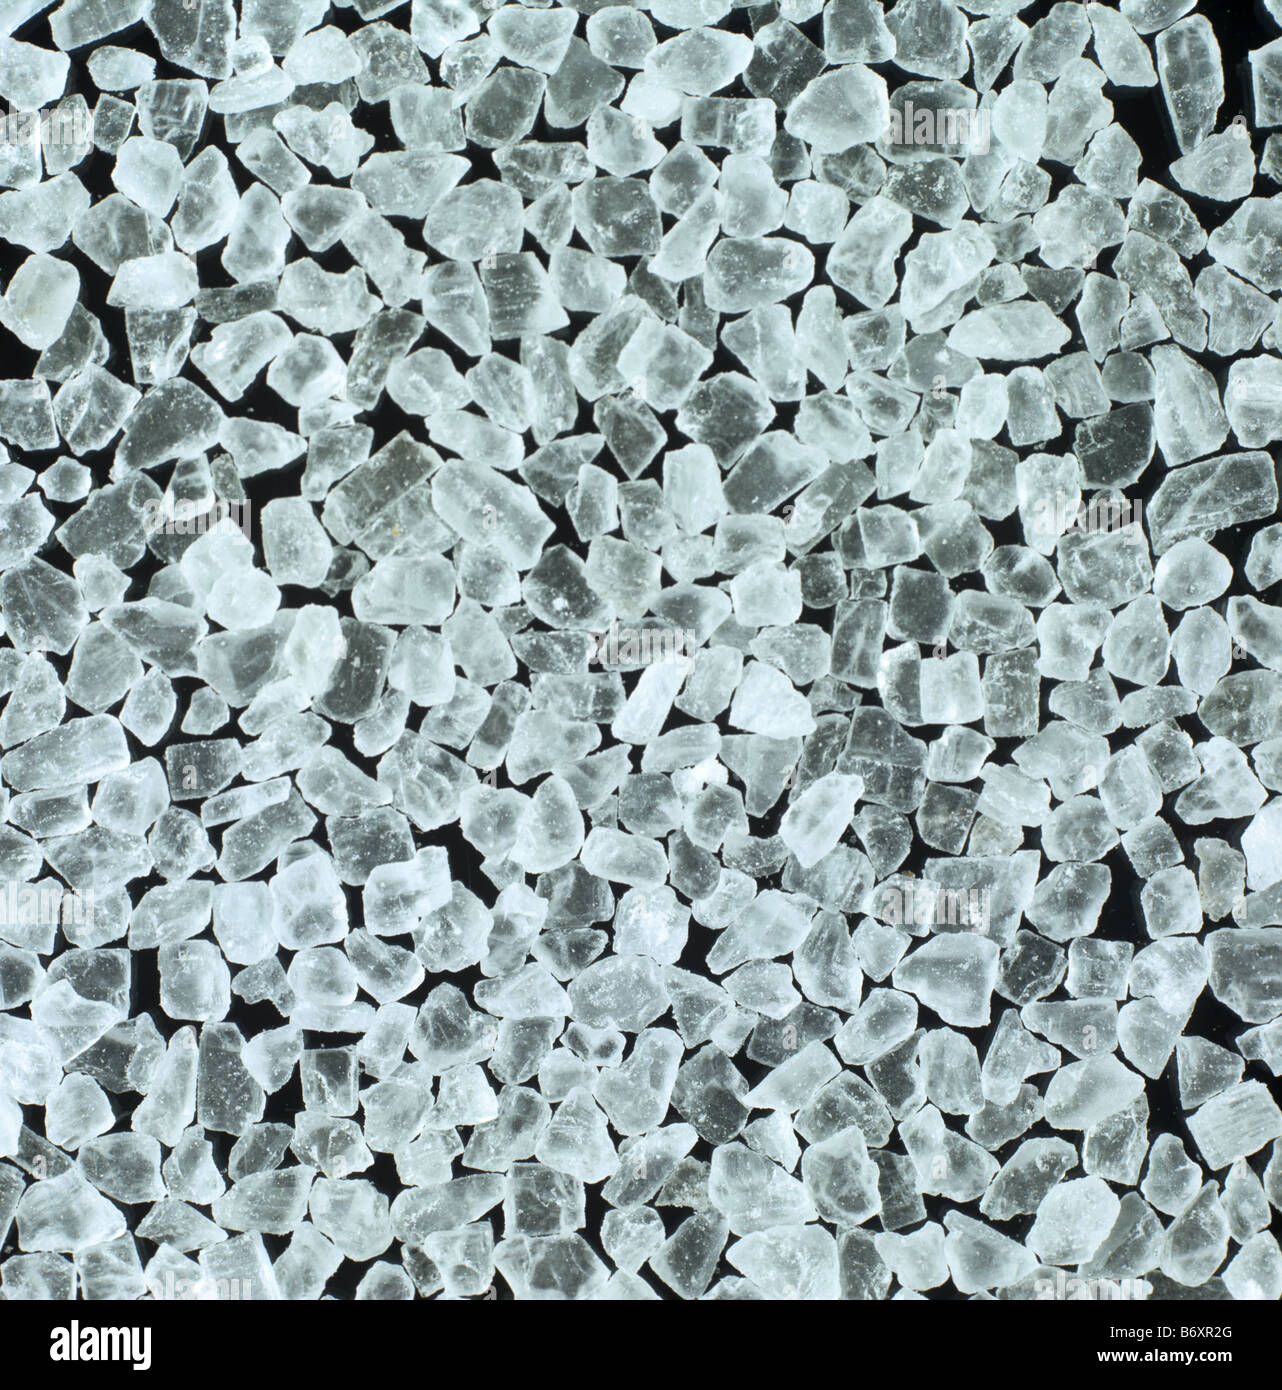 Rock dei cristalli di sale come acquistate per uso cucina e la preparazione di alimenti Foto Stock